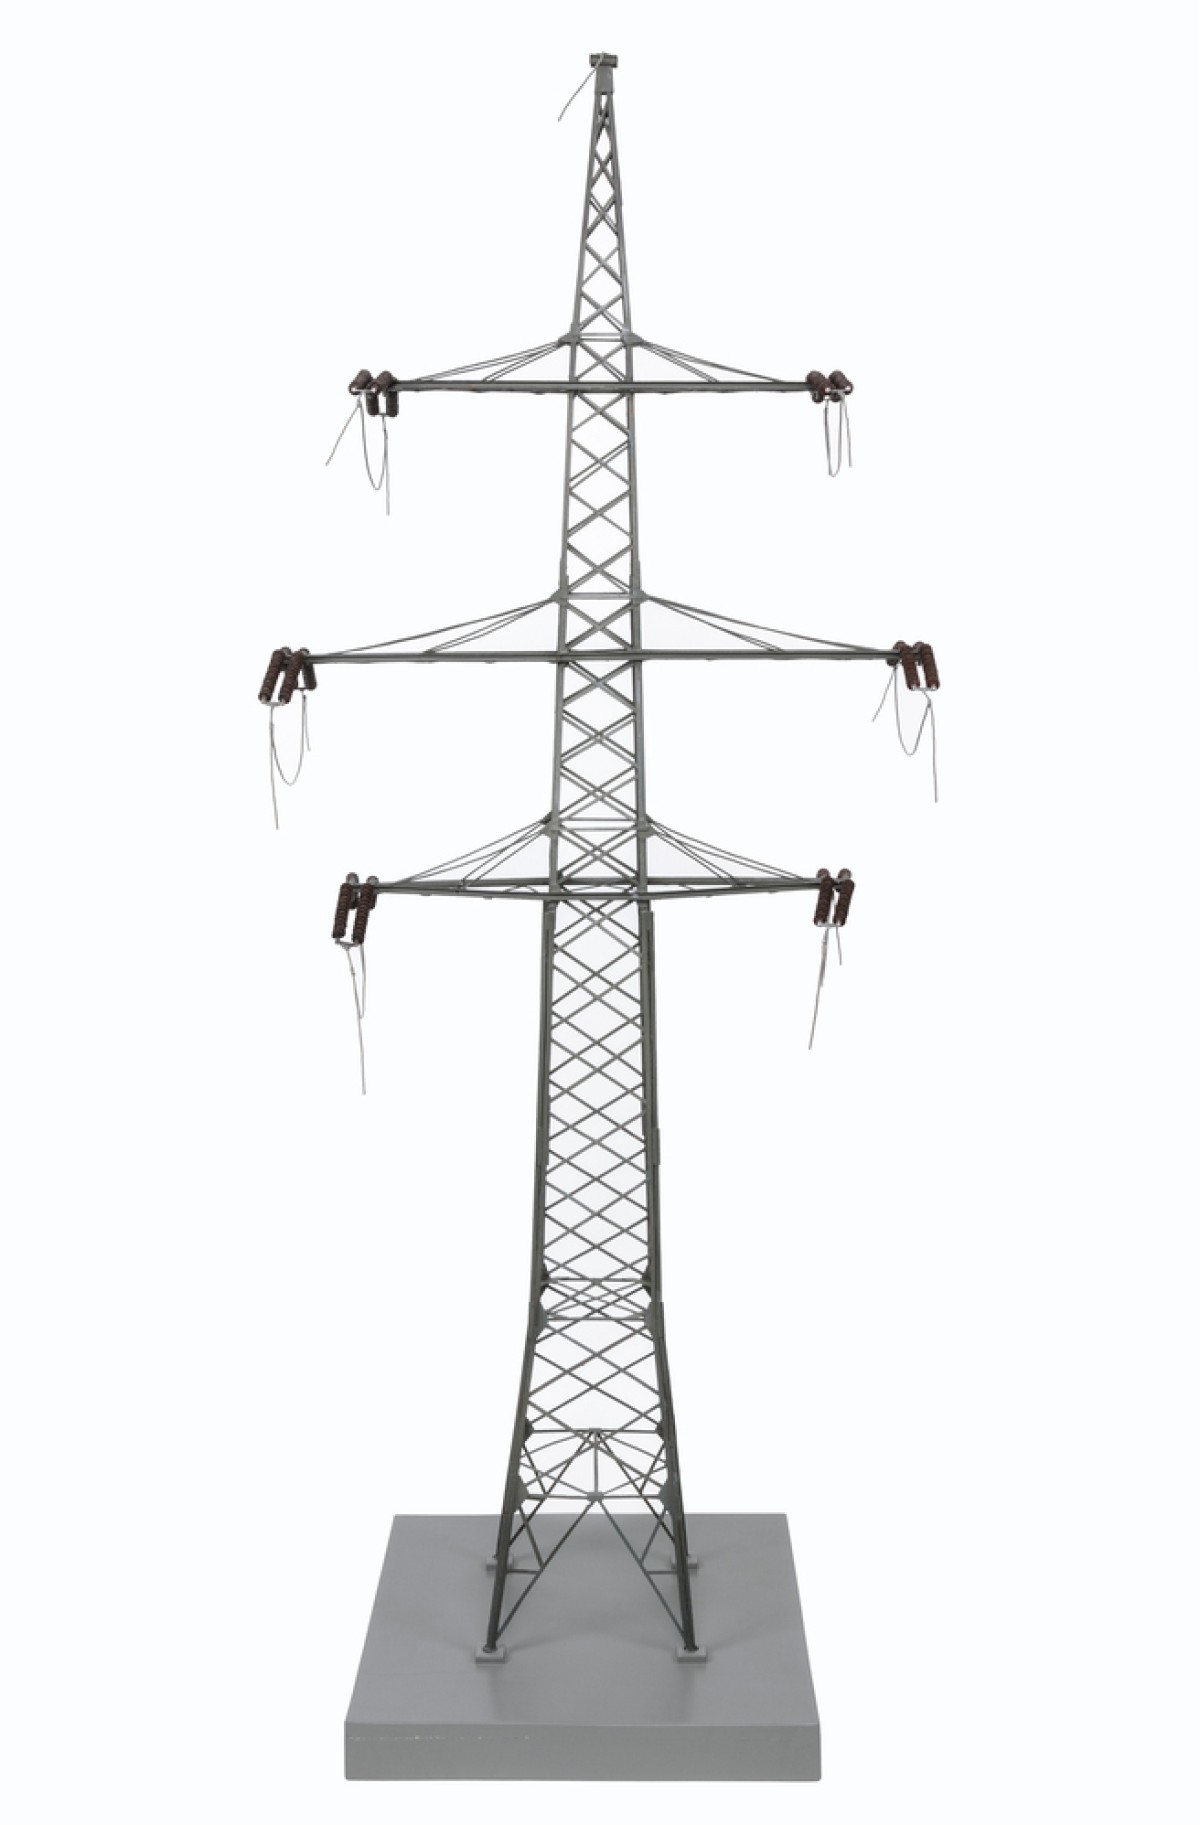 Modell einer Stromleitung für 100 Kilovolt (kV): Hochspannungsleitungen übertragen Strom über weite Strecken und sind unverzichtbare Elemente für eine sichere Energieversorgung.